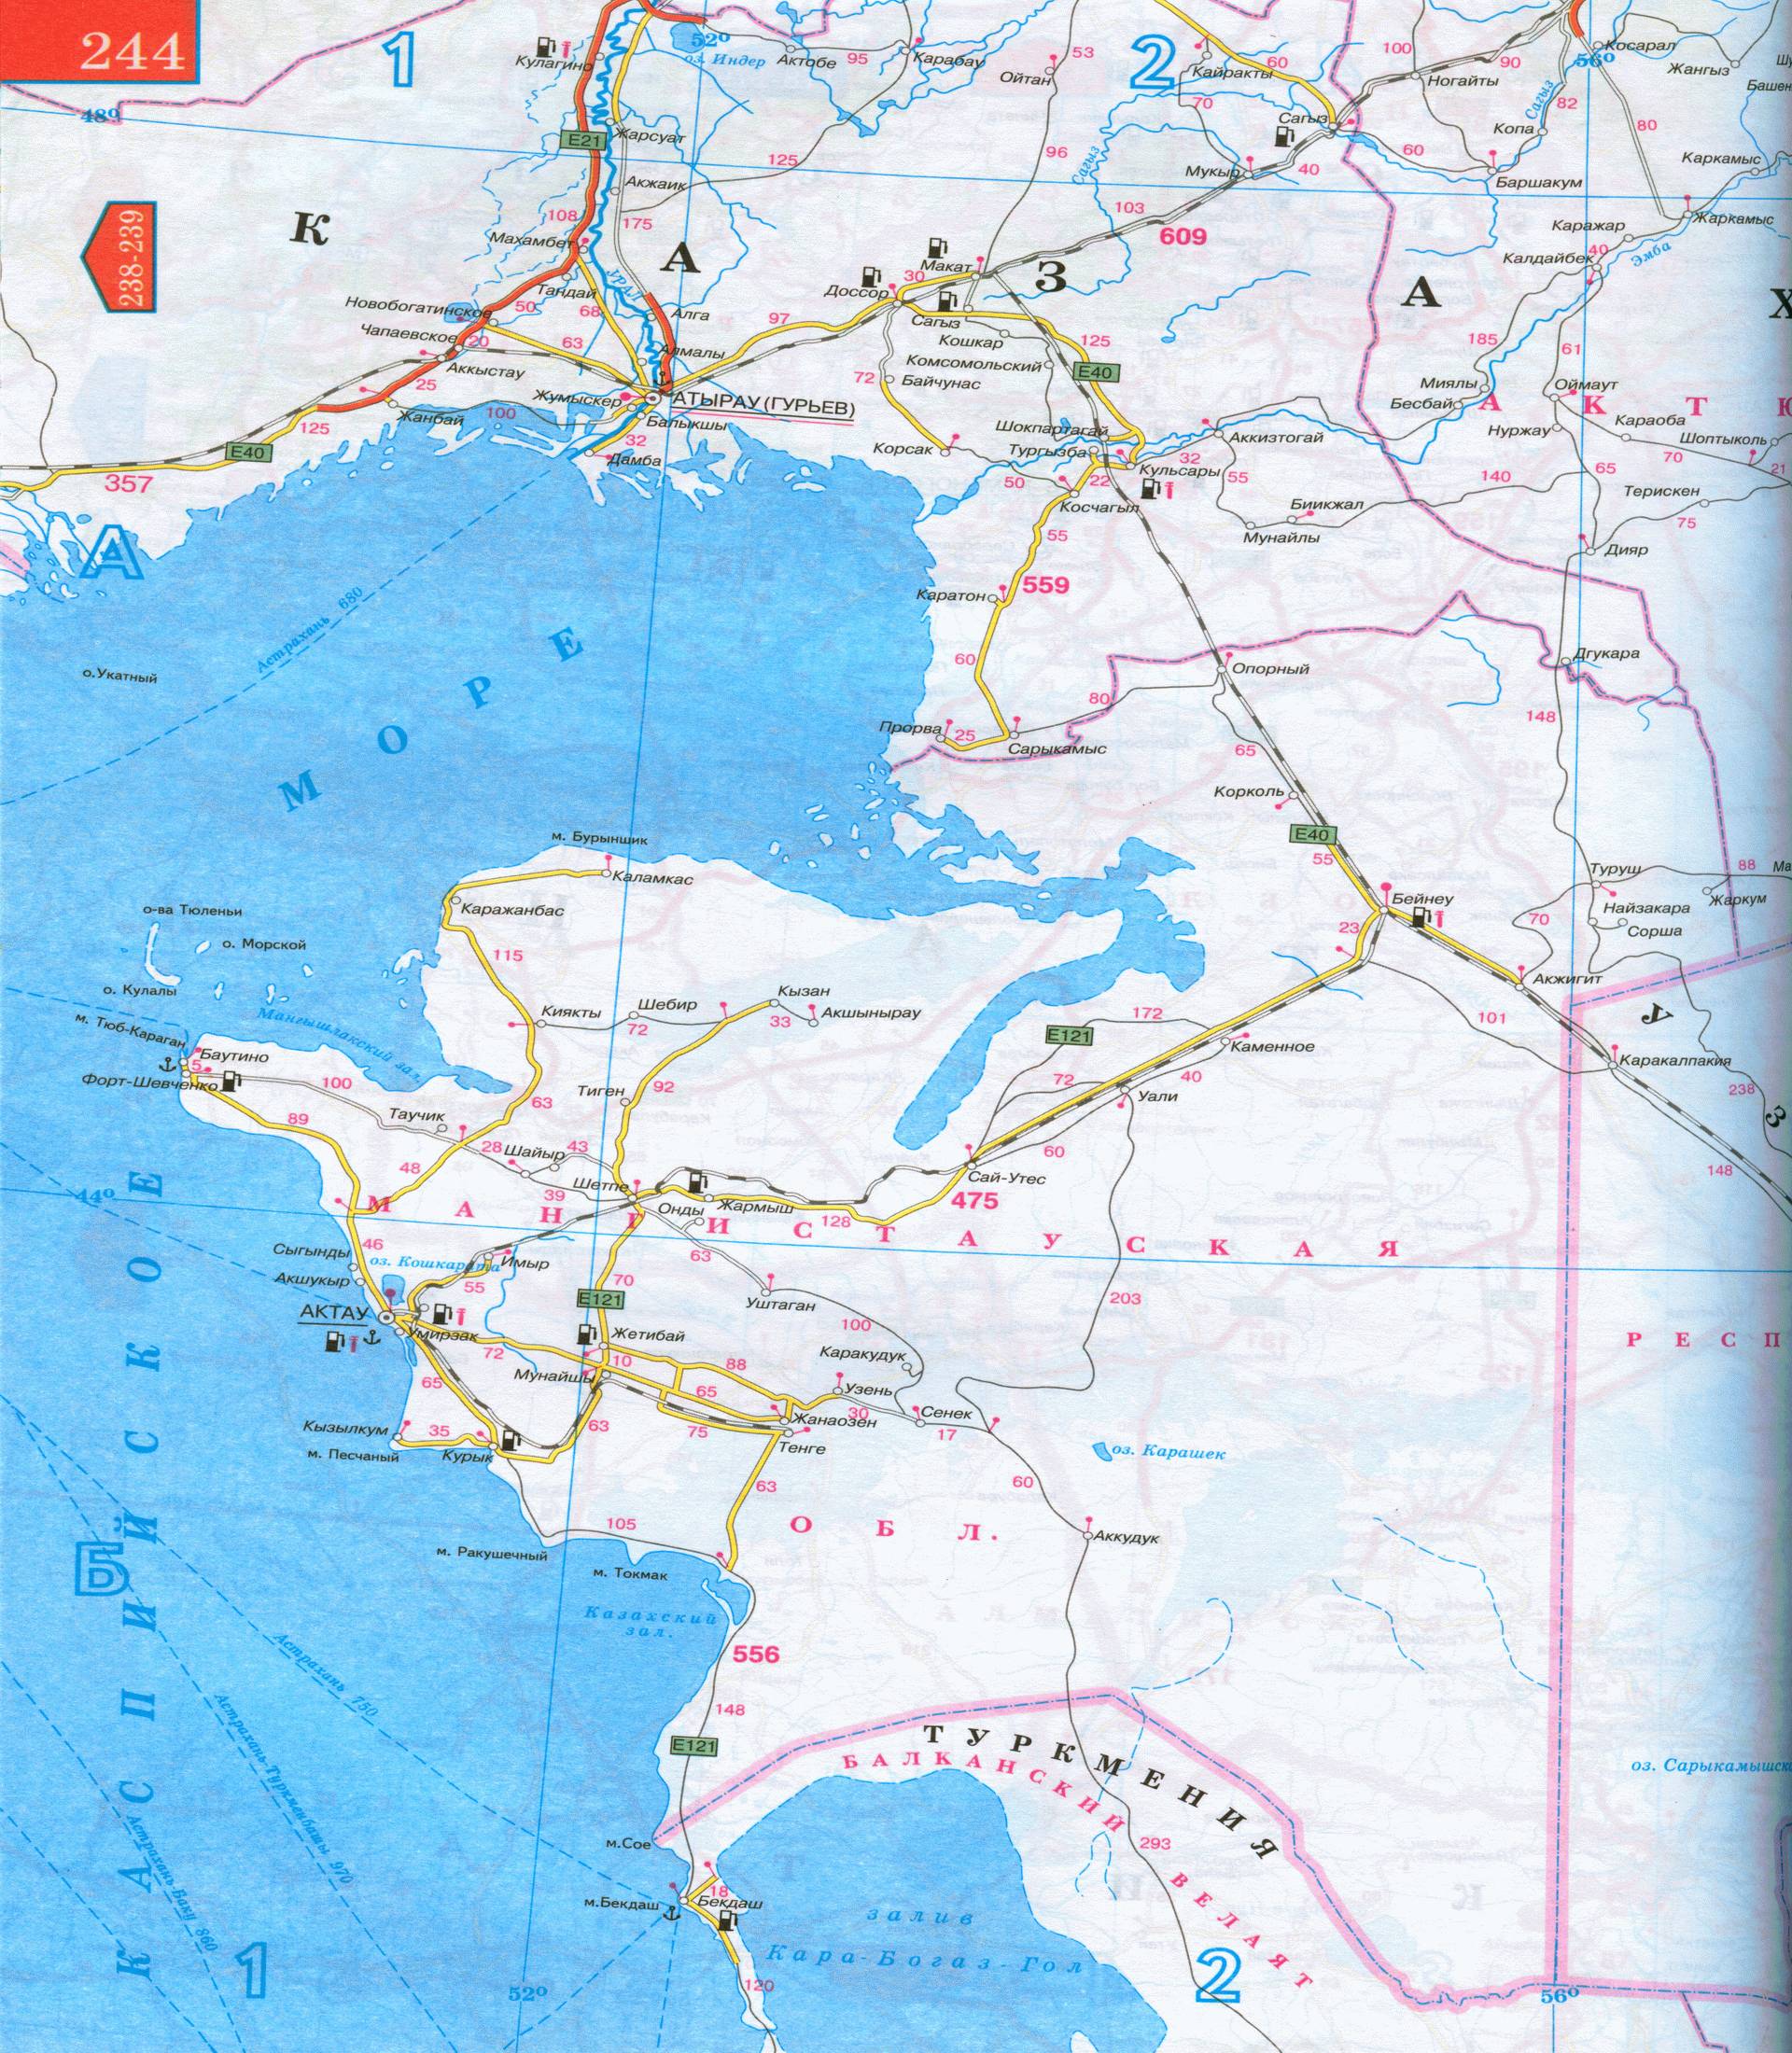 Карта Западного Казахстана - Уральск, Актюбинск, Гурьев, Аральск, Актау. Карта автомобильных дорог западного Казахстана, A1 - 